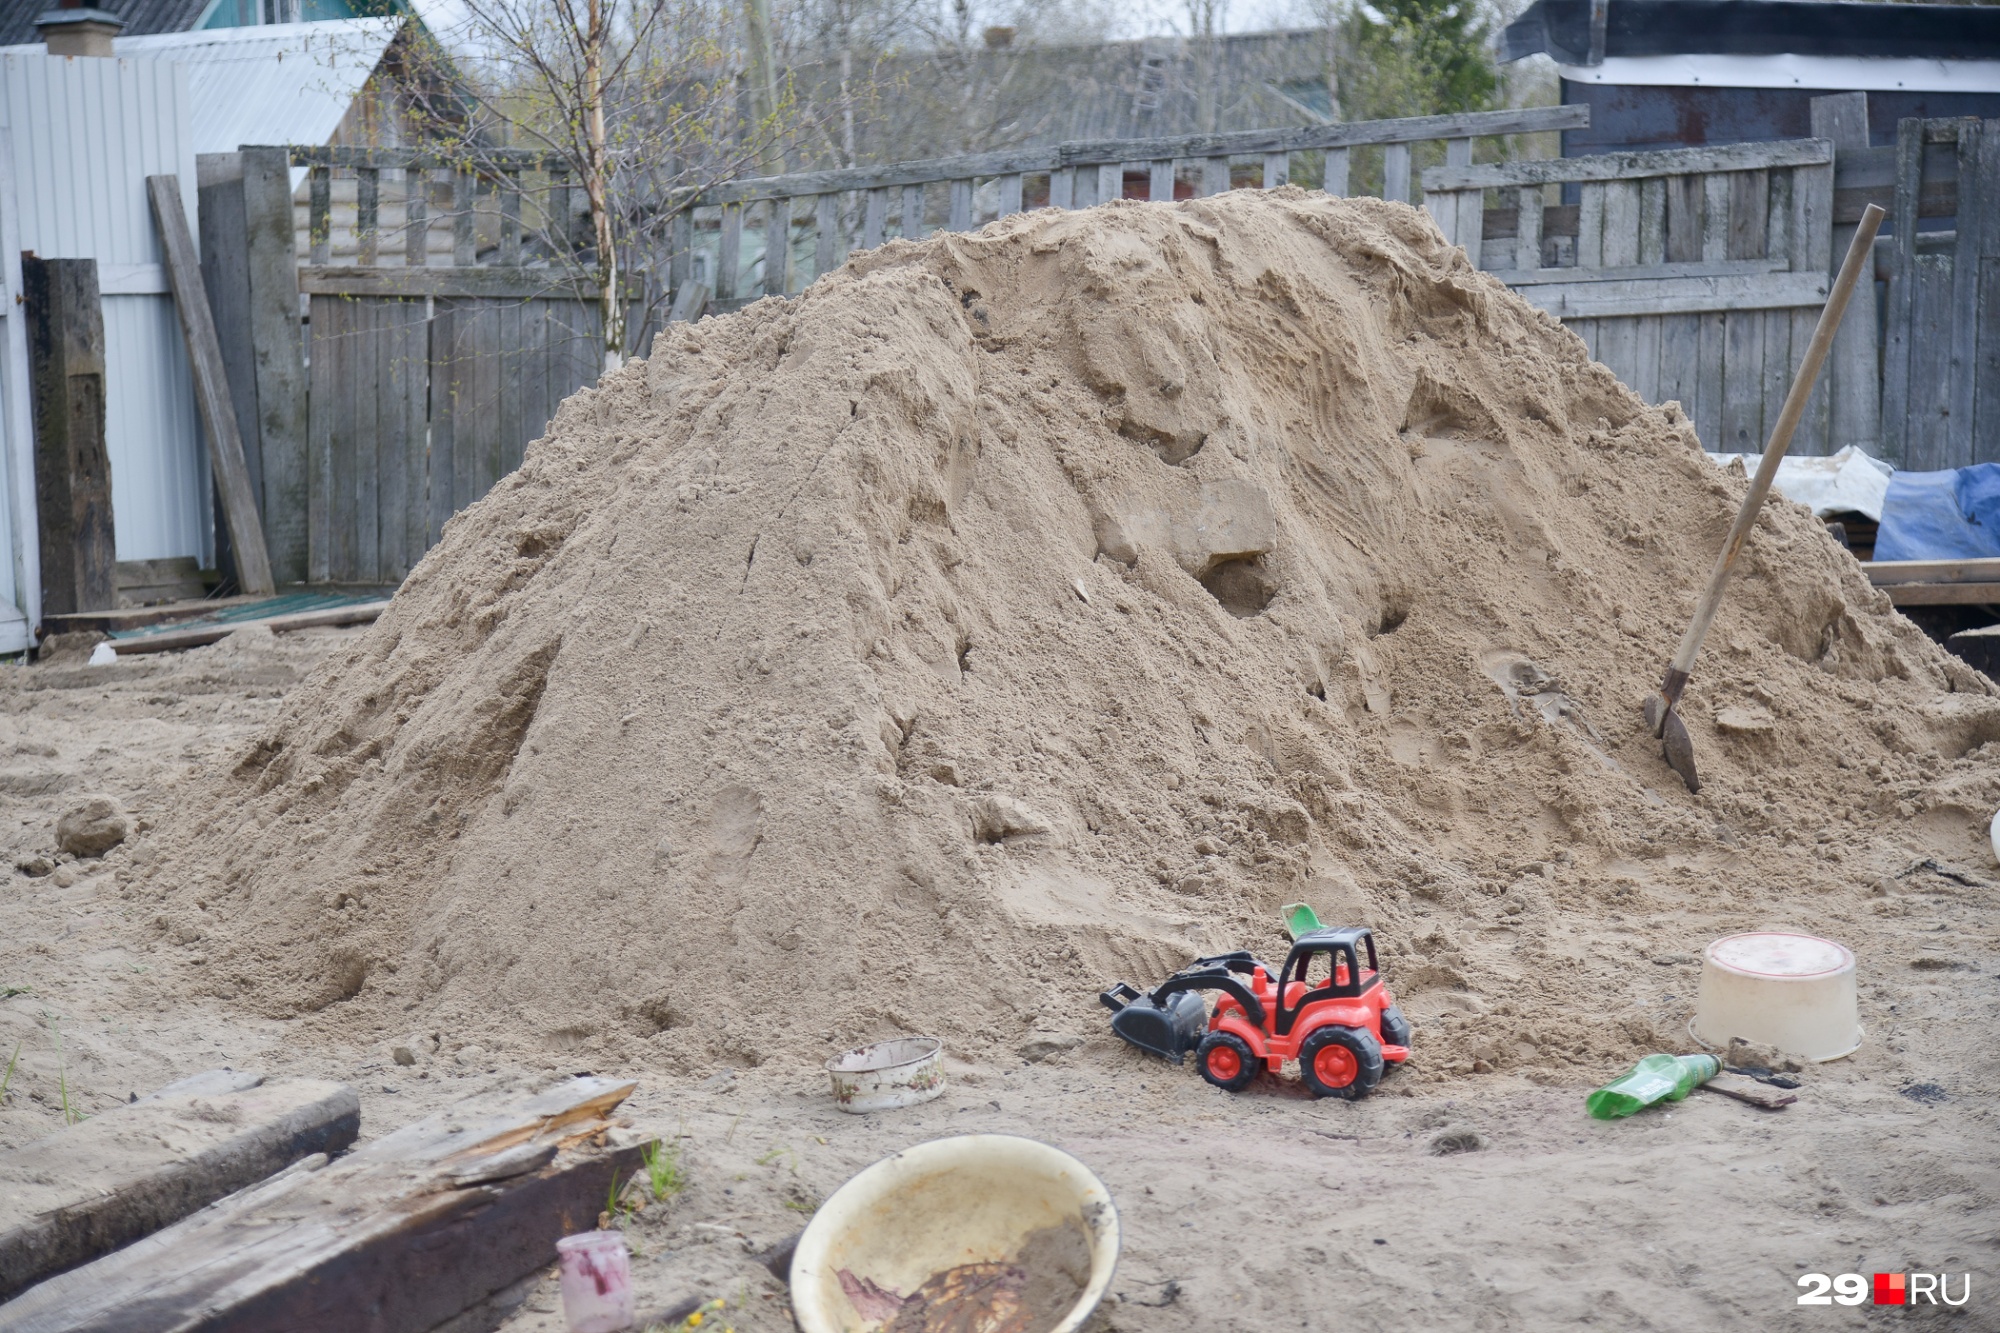 Песок для восстановления участка стал импровизированной детской песочницей